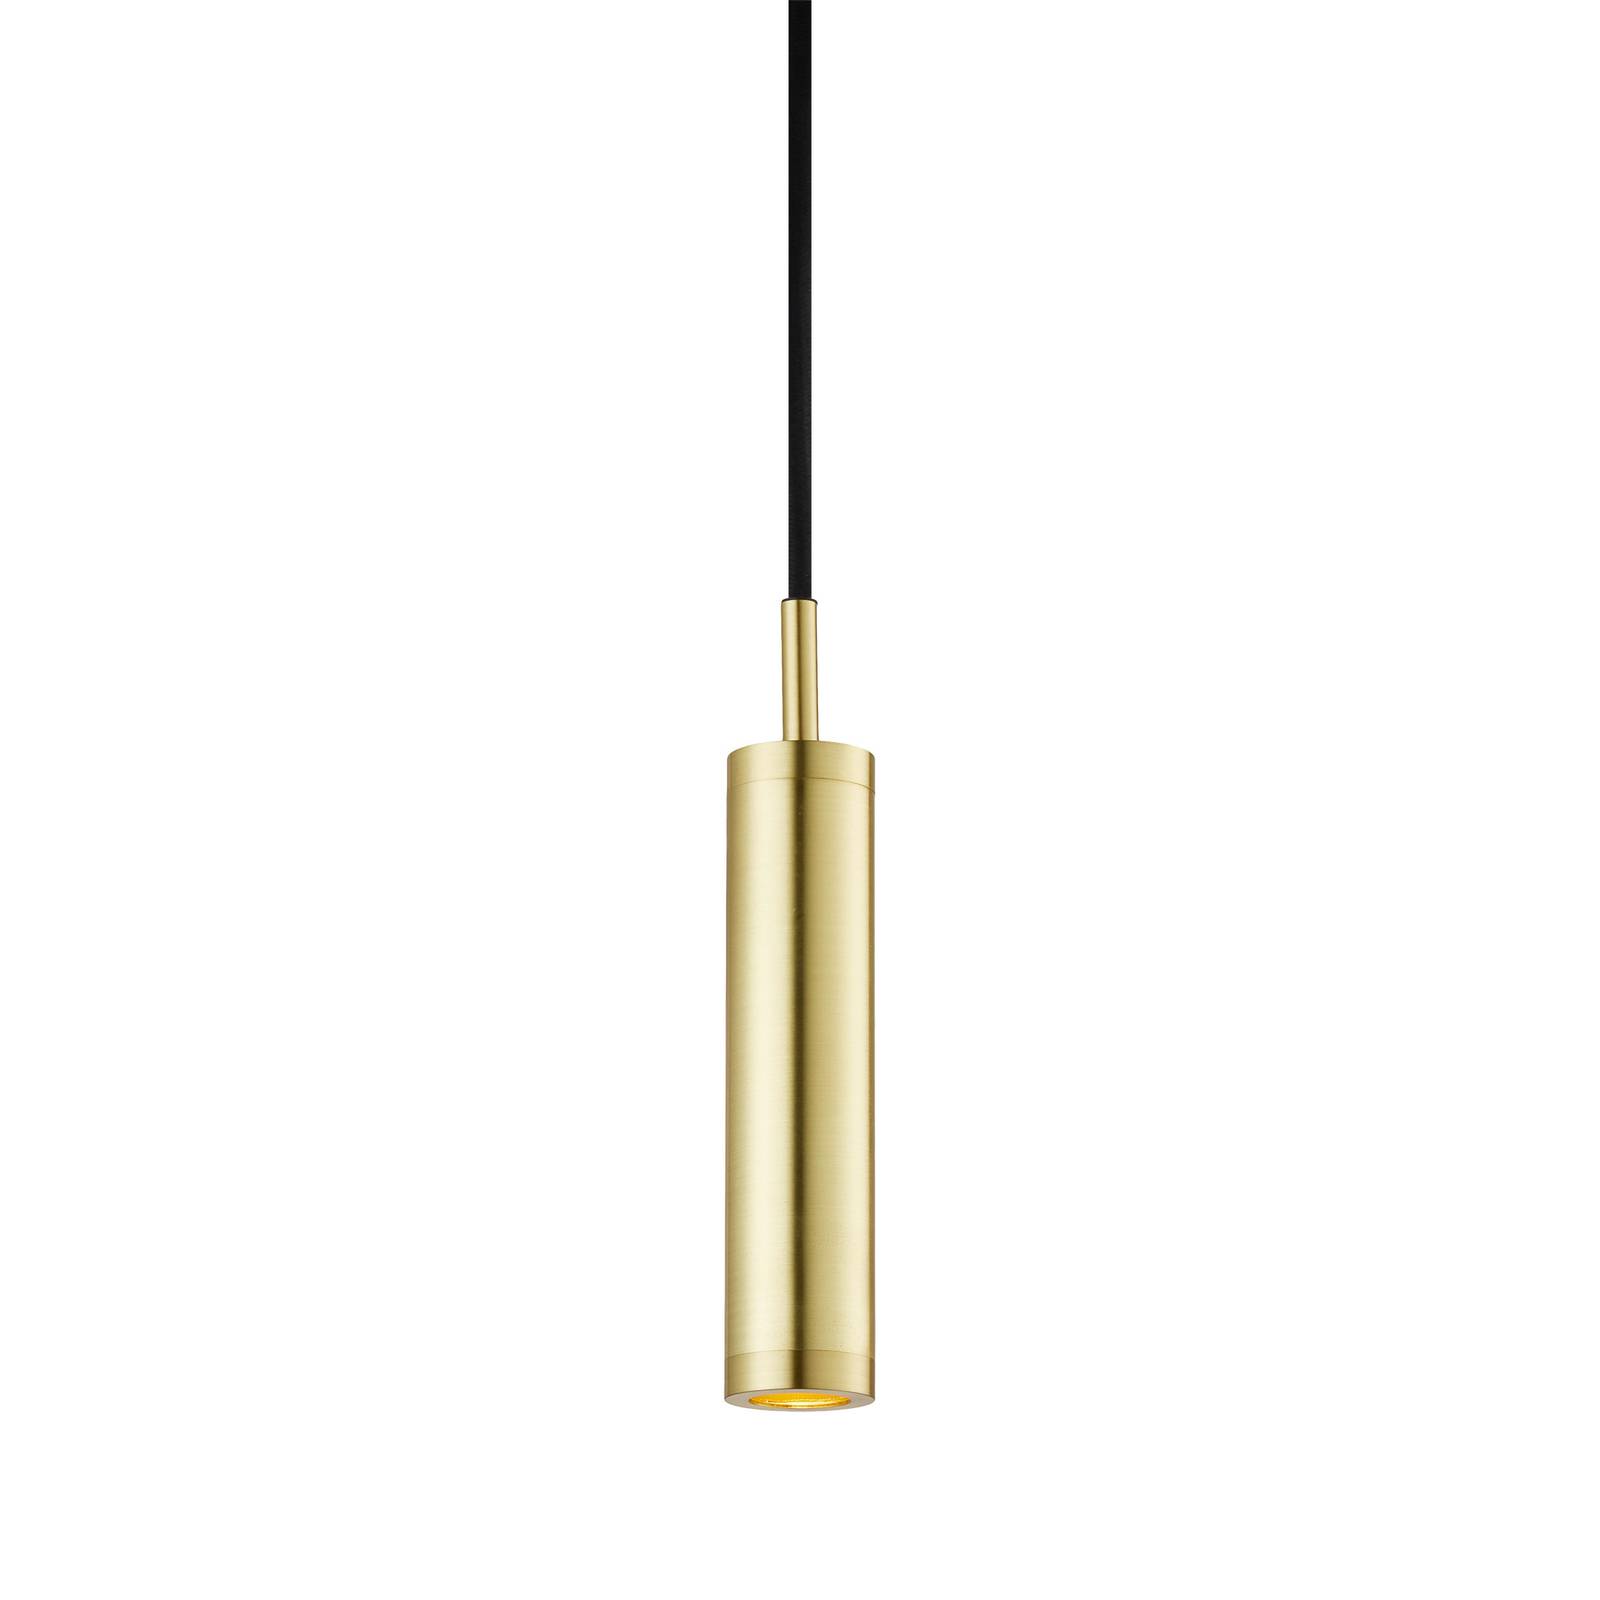 DESIGN BY US Závěsná lampa Liberty Spot, zlatá barva, výška 25 cm